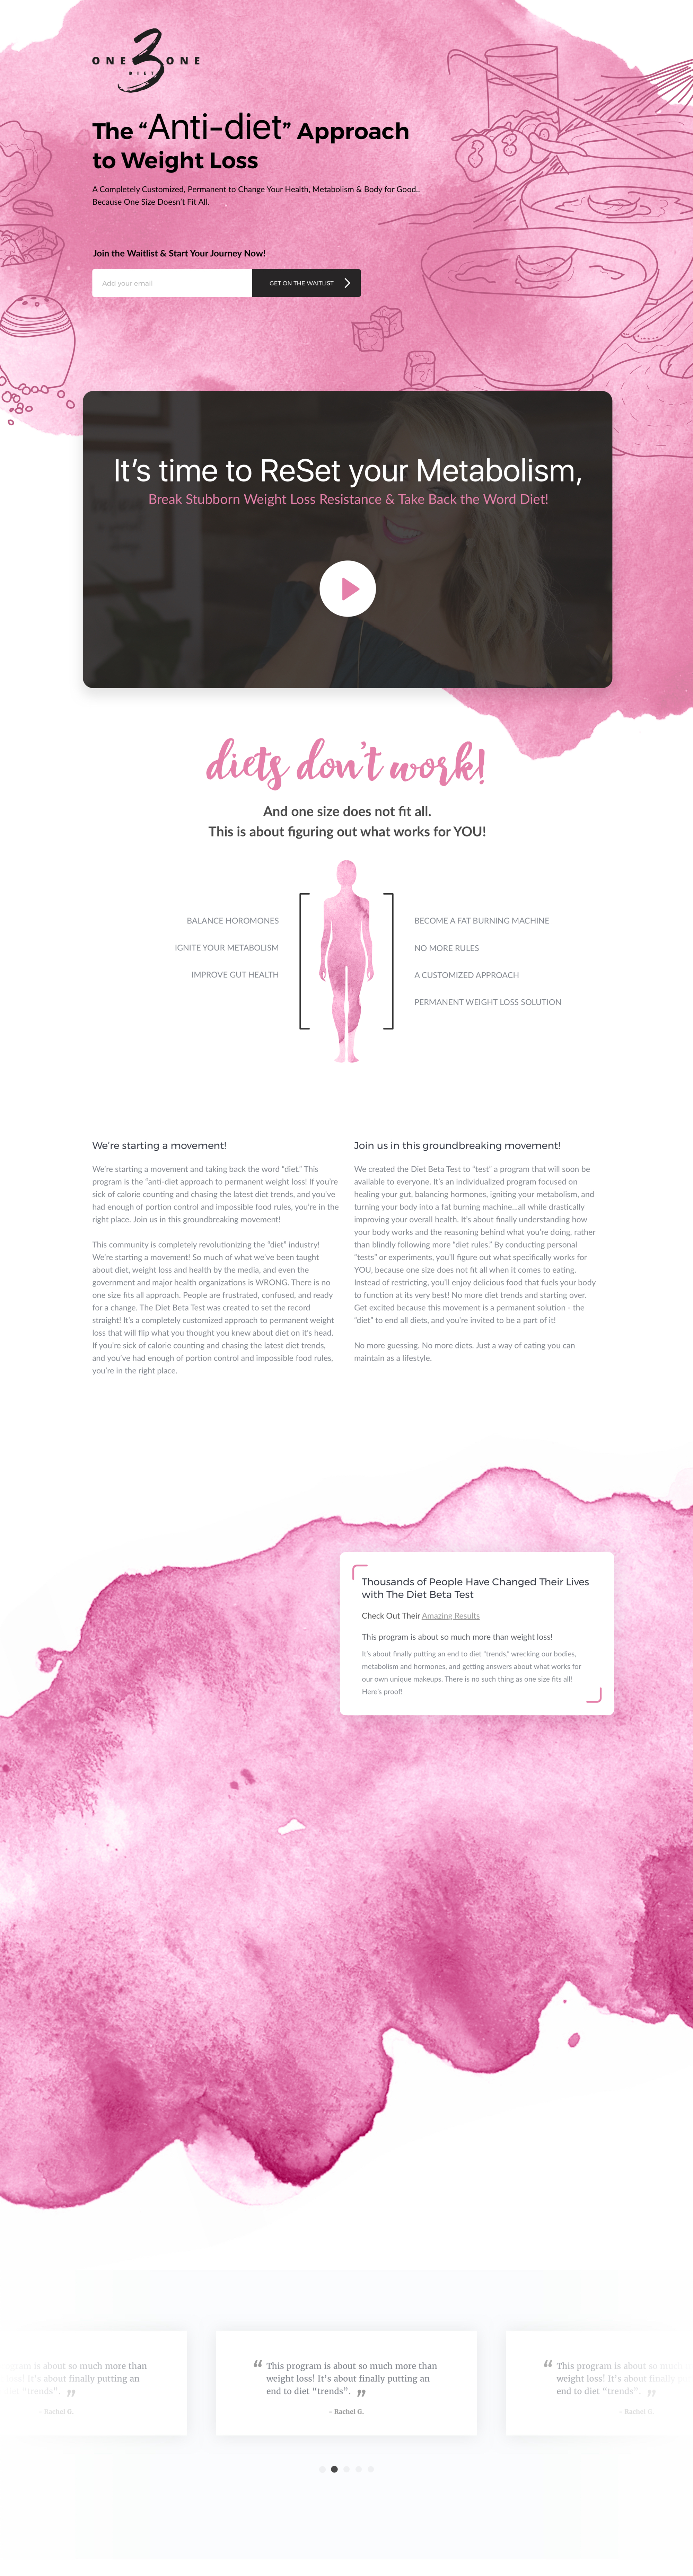 Landing page design mockup for Chalene Johnson's Diet Program